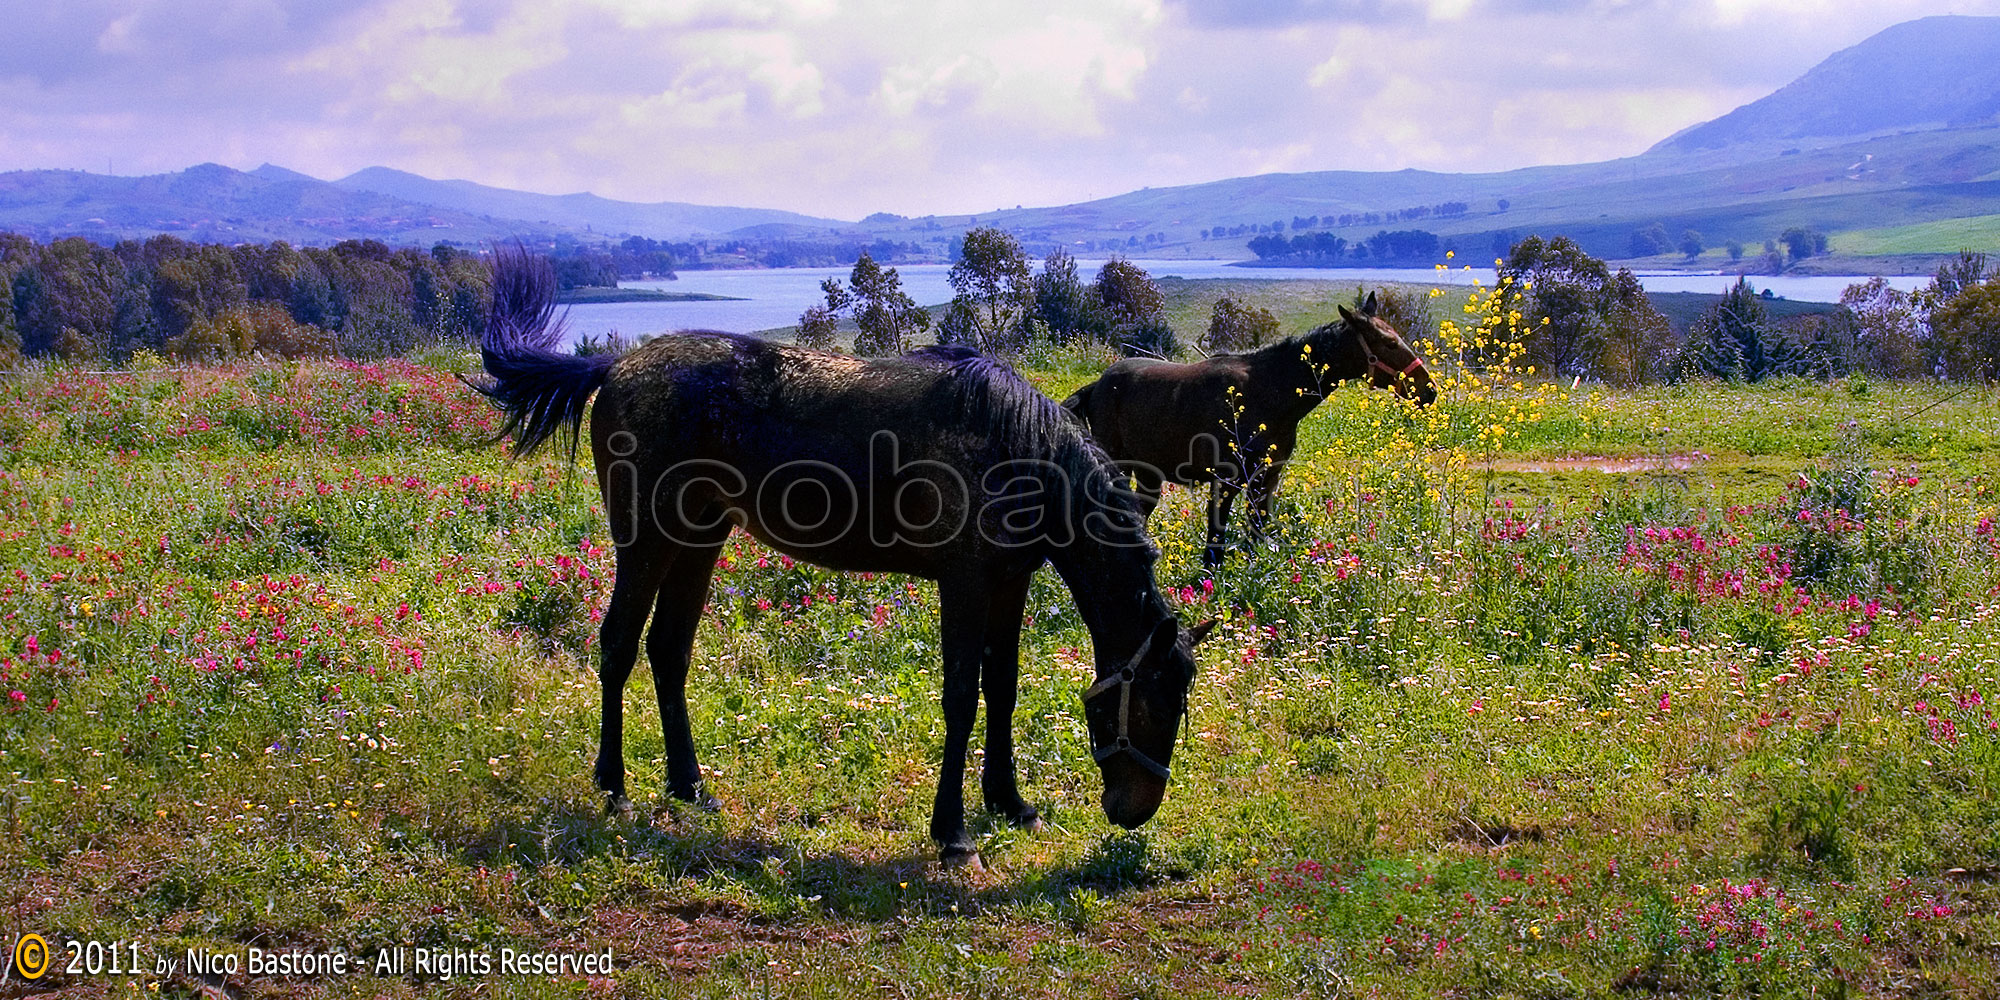 Piana degli Albanesi. "Paesaggio: cavalli al pascolo" - "Landscape: horses grazing" 2000x1000